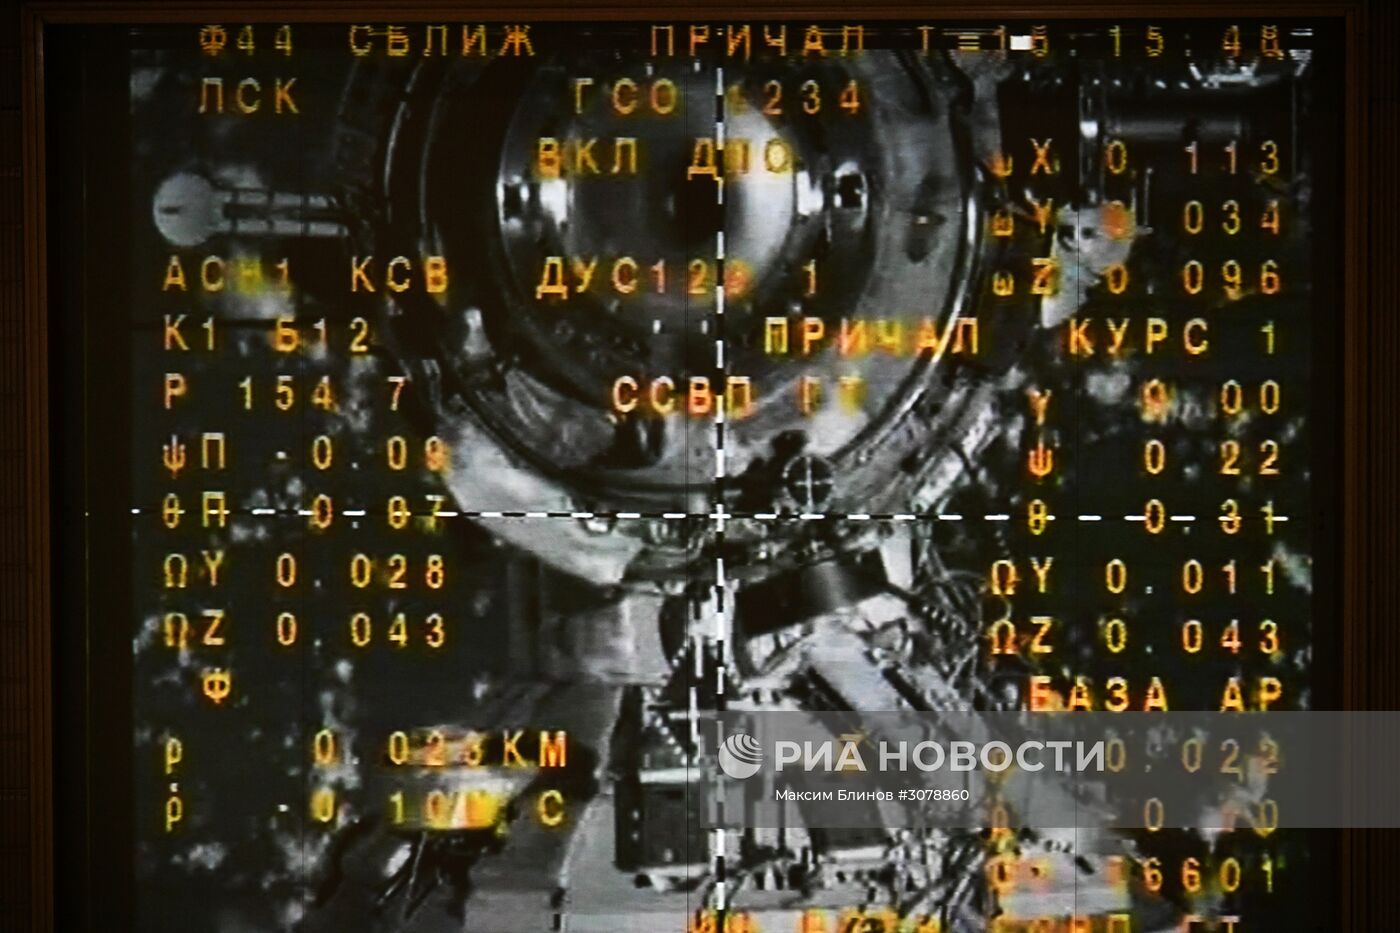 Операция по выведению на орбиту, сближению и стыковке ТПК "Союз МС-04" с МКС